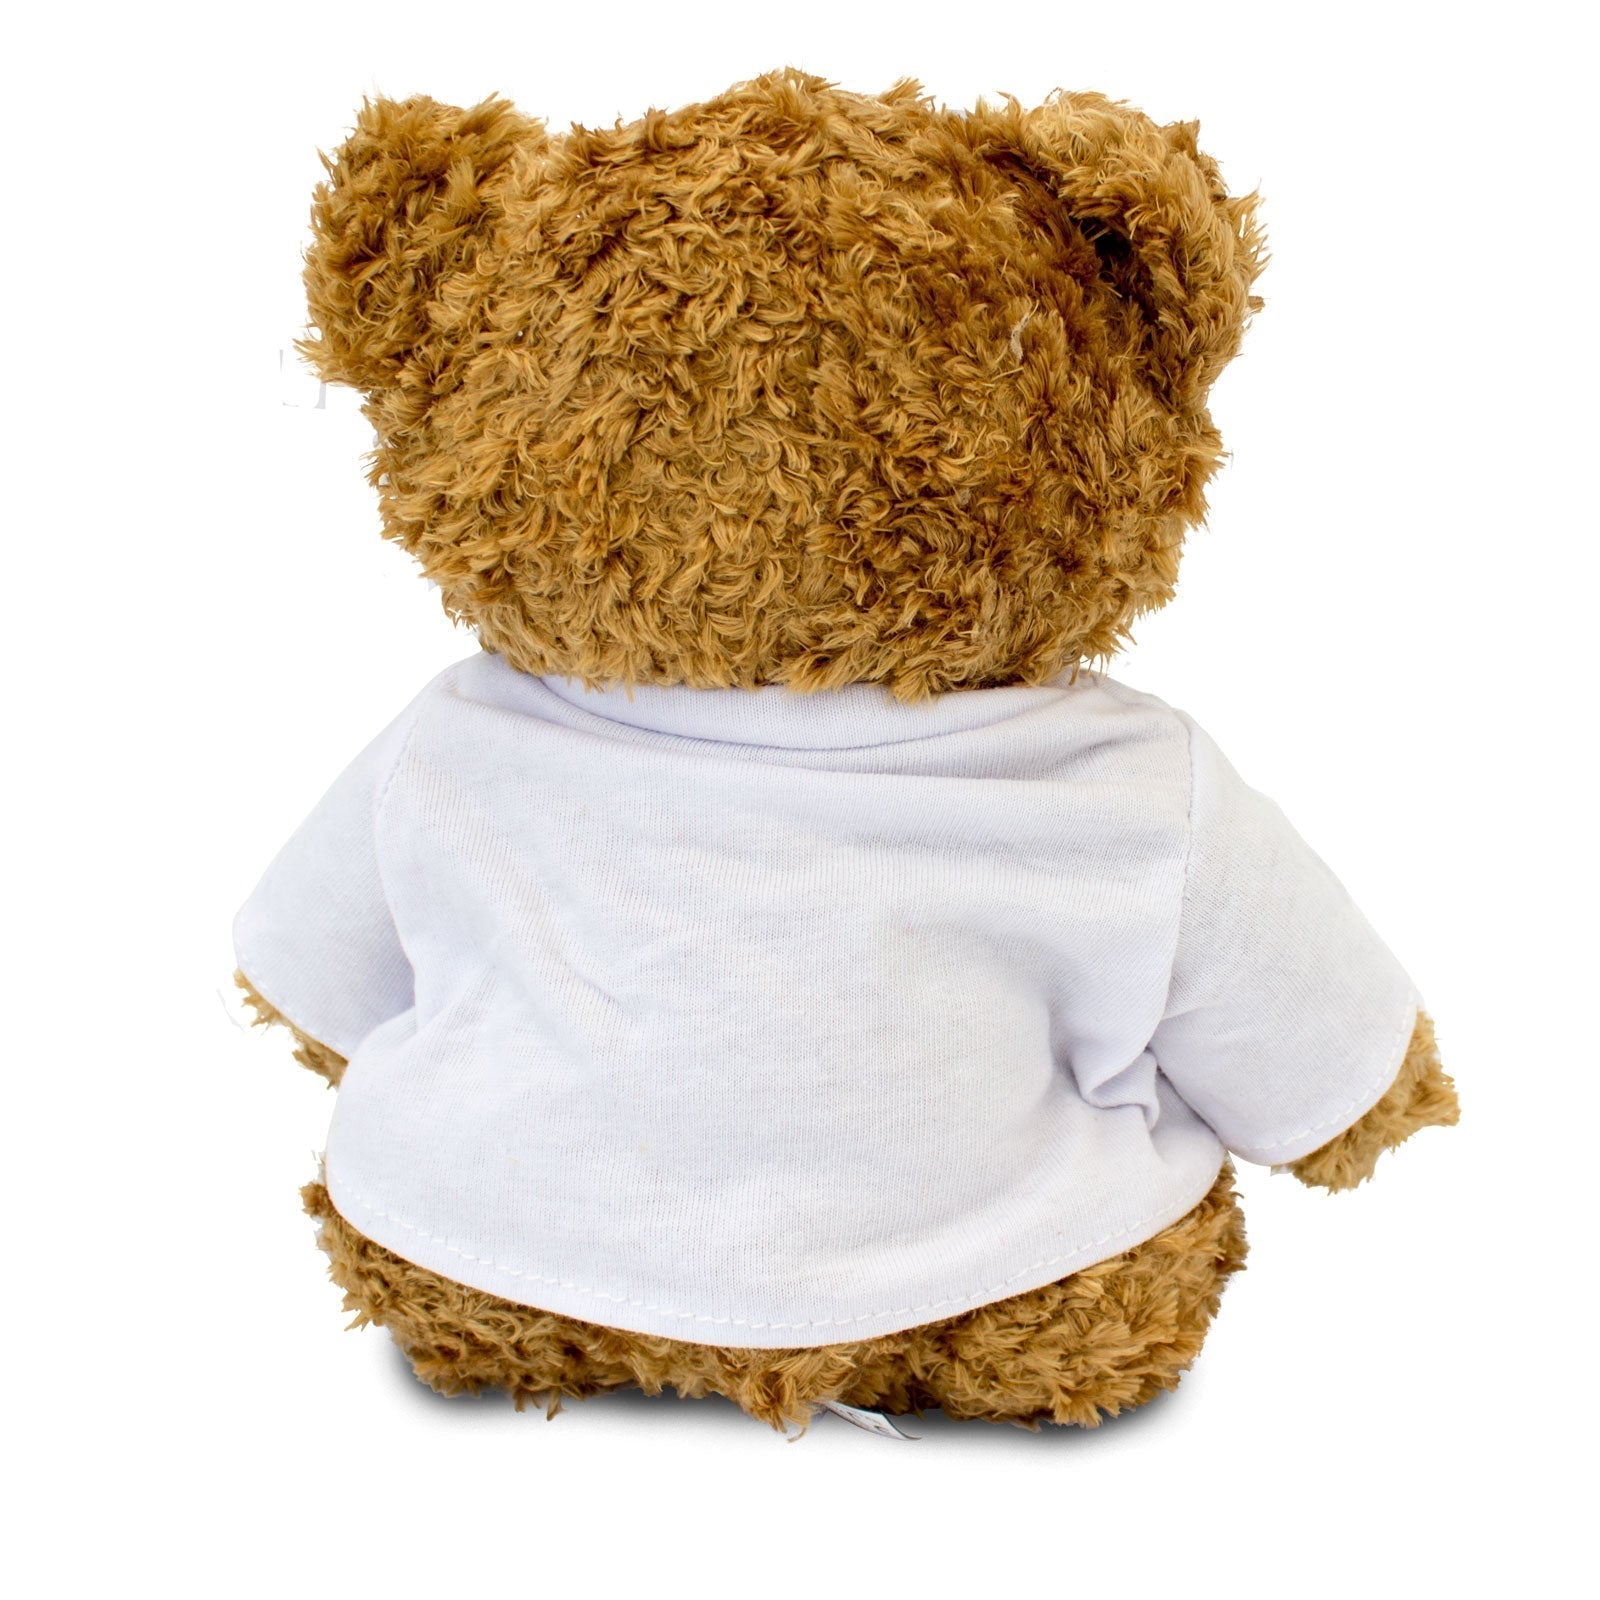 The Greatest IPO Ever - Teddy Bear